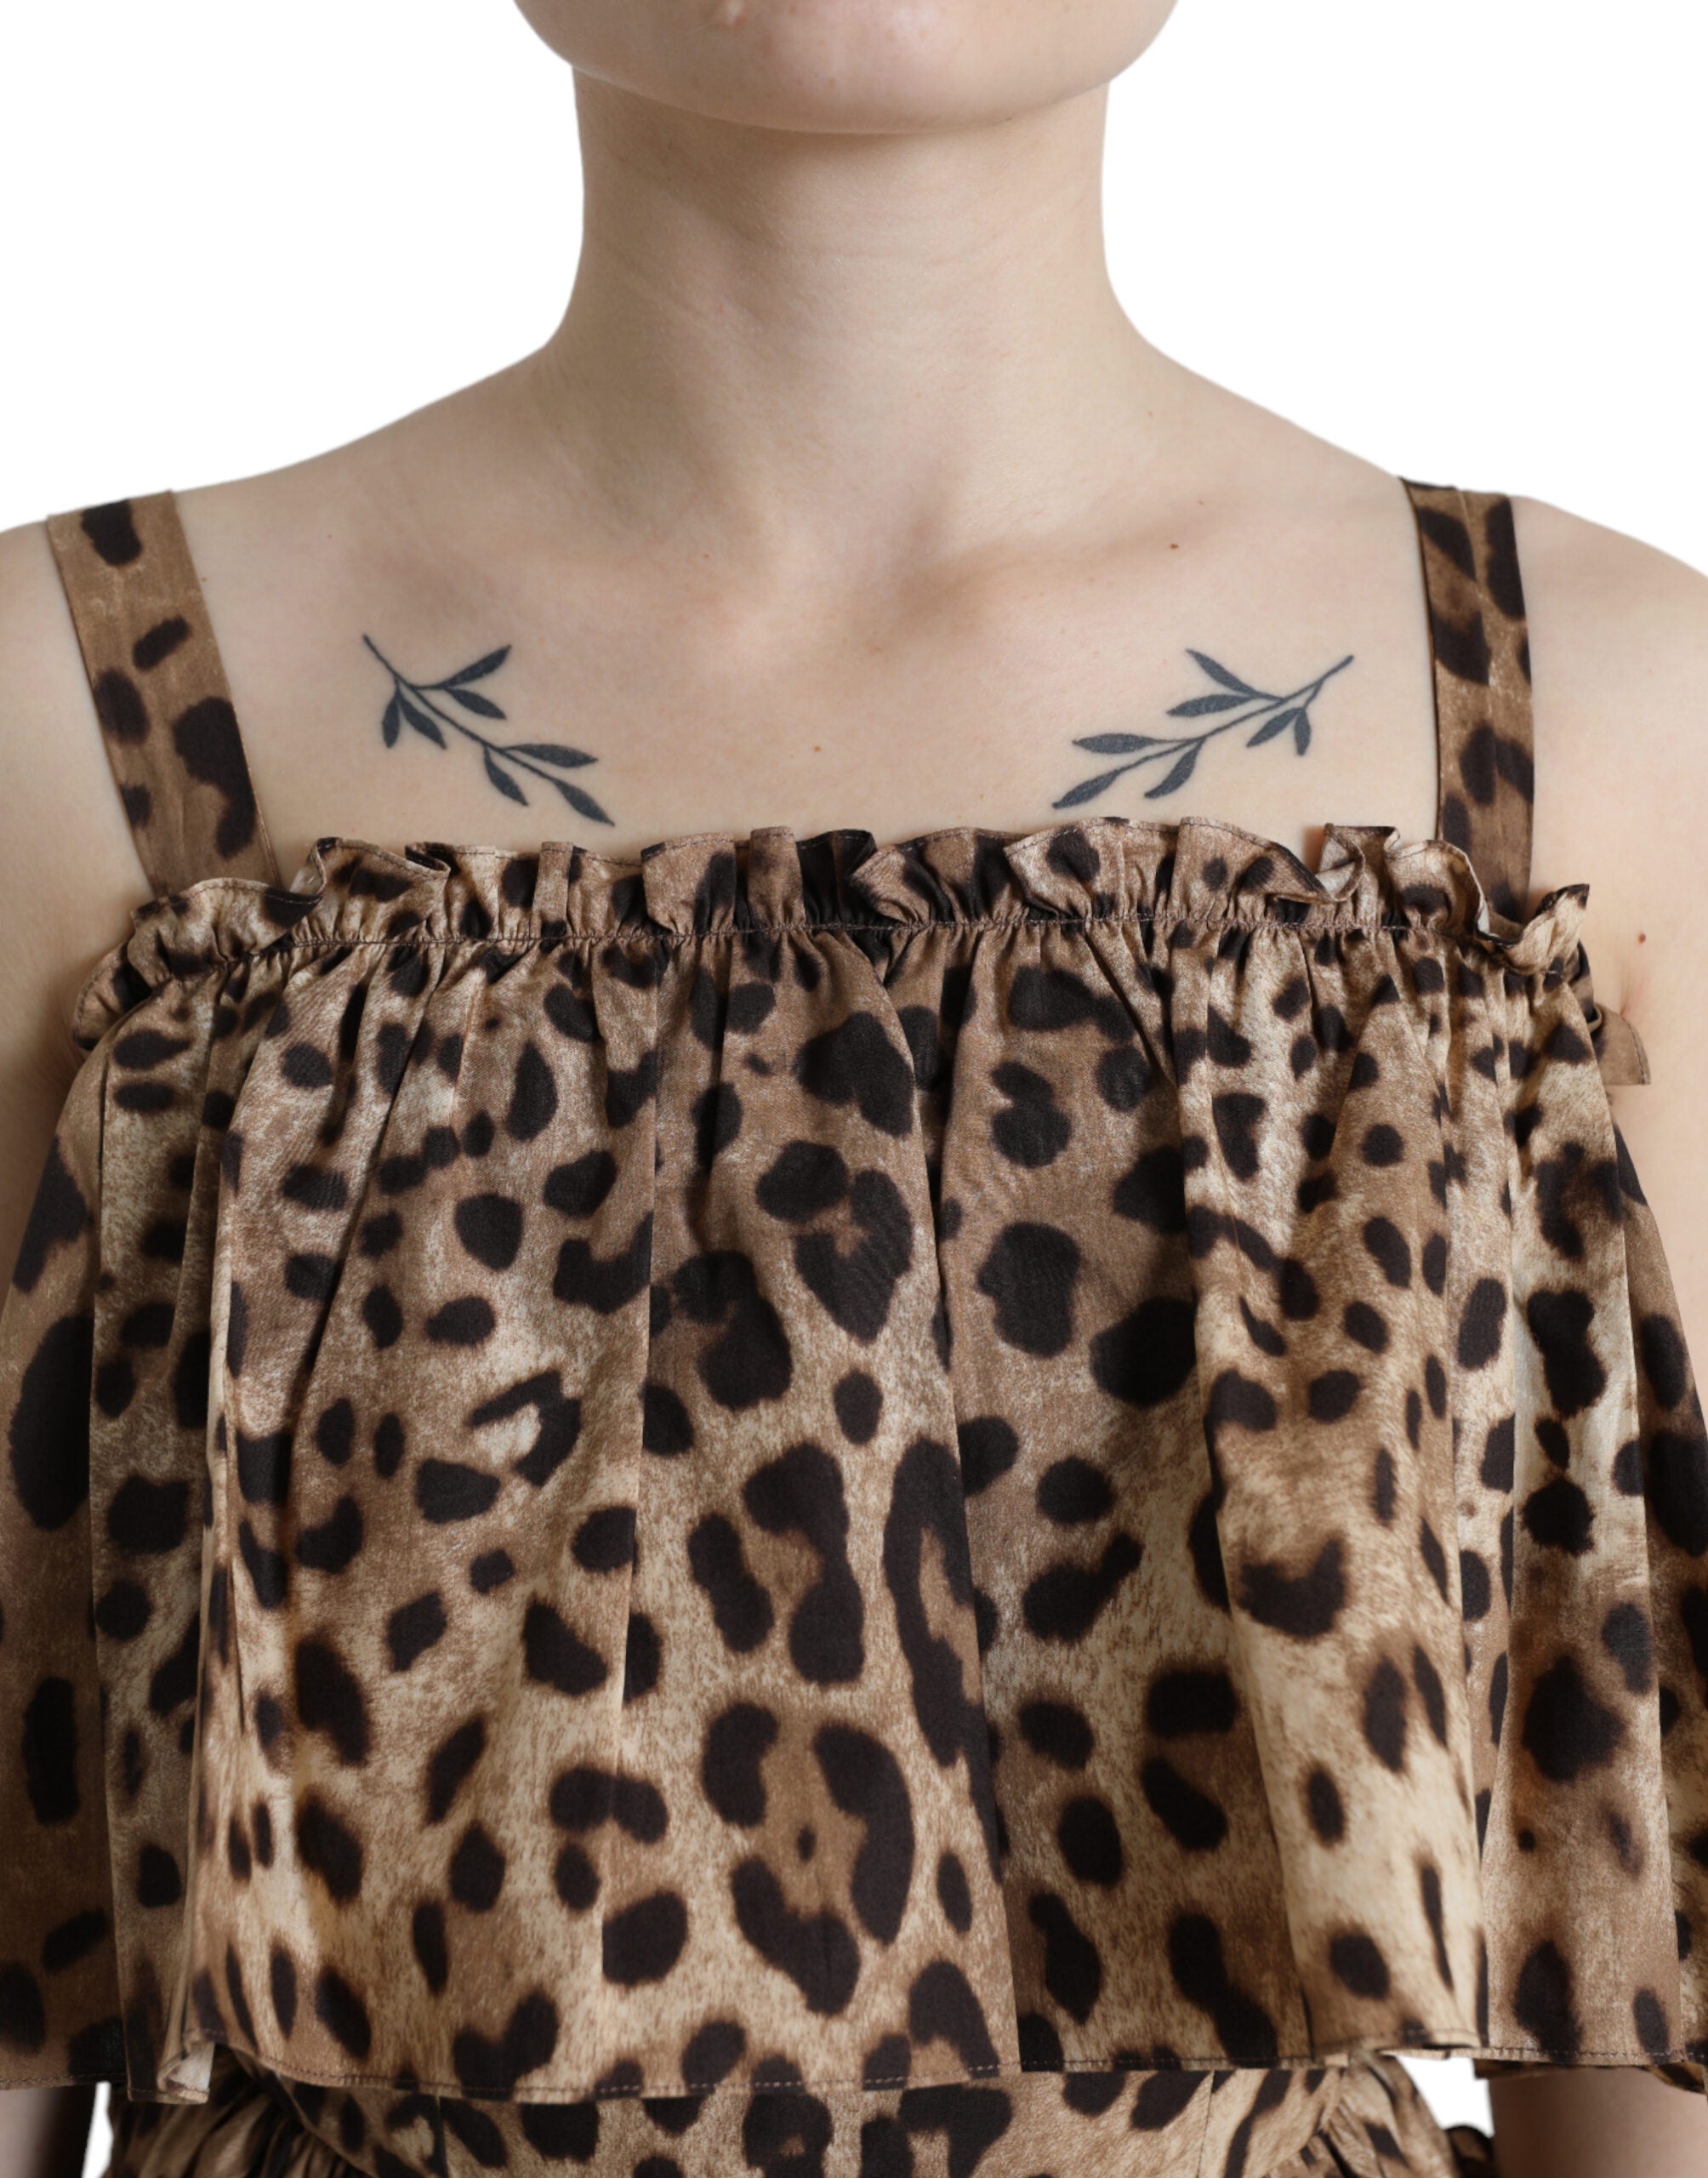 Leopard Print A-Line Cotton Dress - Divitiae Glamour